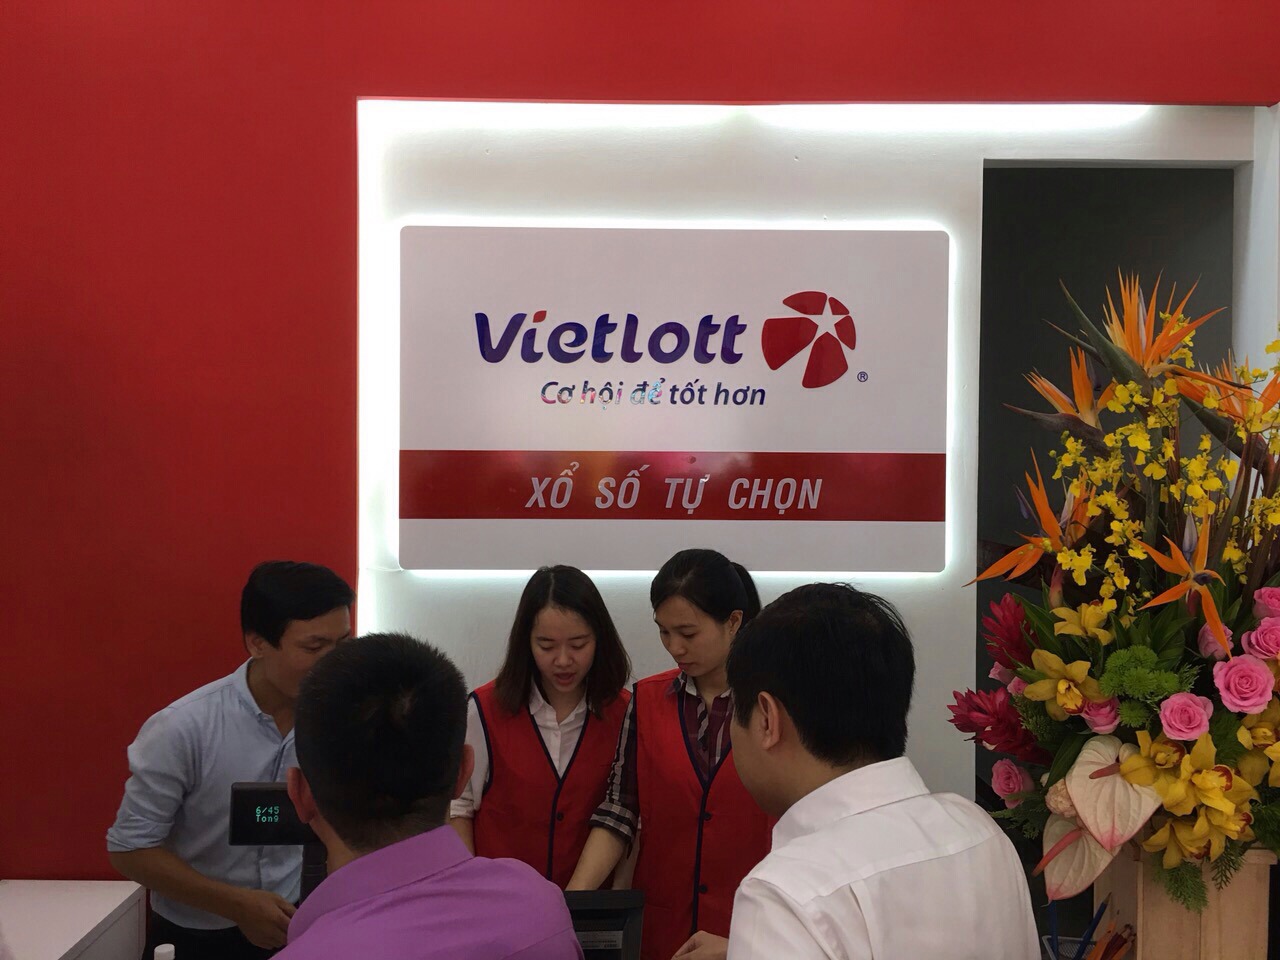 Một đại lý bán sản phẩm xổ số tự chọn tại tỉnh Khánh Hòa. Nguồn Vietlott